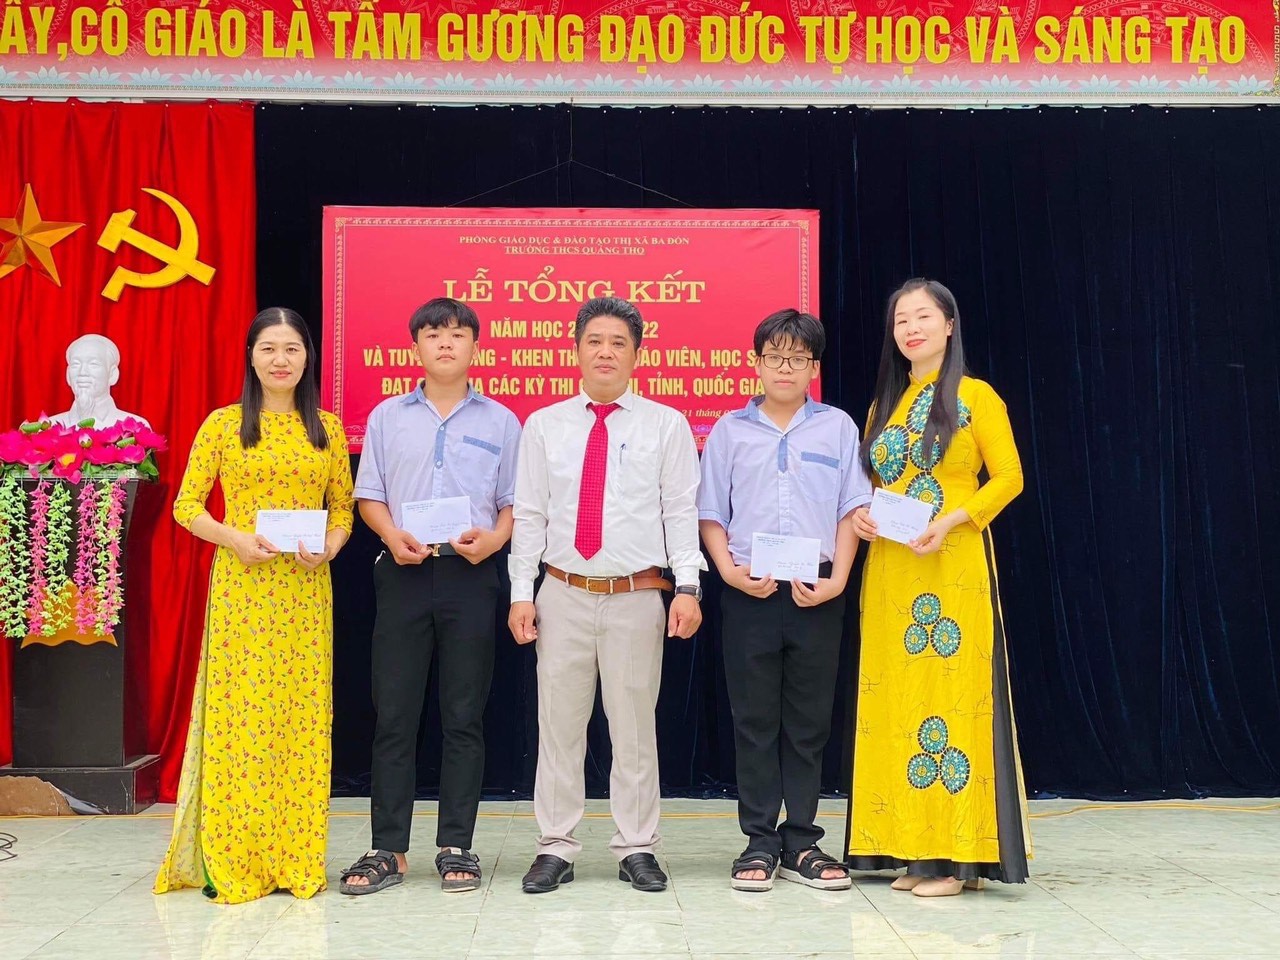 Em Nguyễn Hải Nam (Thứ 2 từ phải qua trái) được khen thưởng vì có thành tích tại lễ tổng kết trường THCS Quảng Thọ.